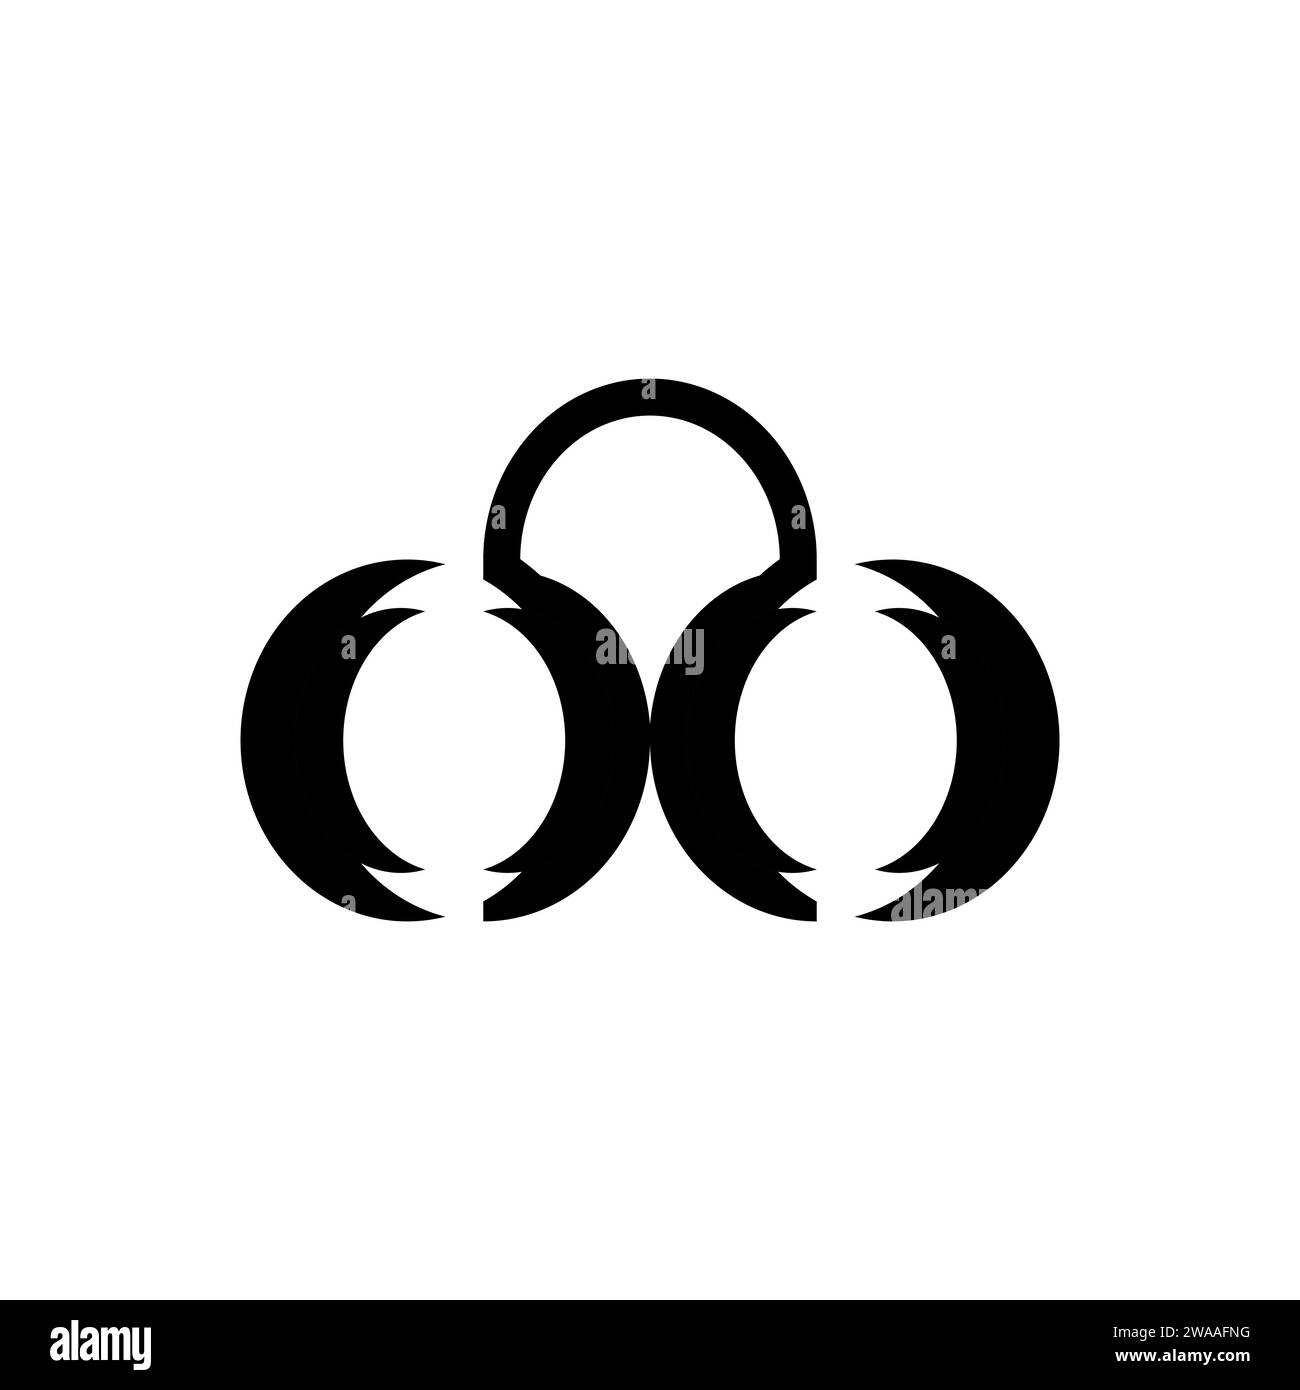 Goggle Octopus Logo. Es ist sehr einfach und luxuriös und eignet sich für moderne Unternehmen. Einprägsames und elegantes Logo für die Schifffahrt oder andere Branchen. Stock Vektor